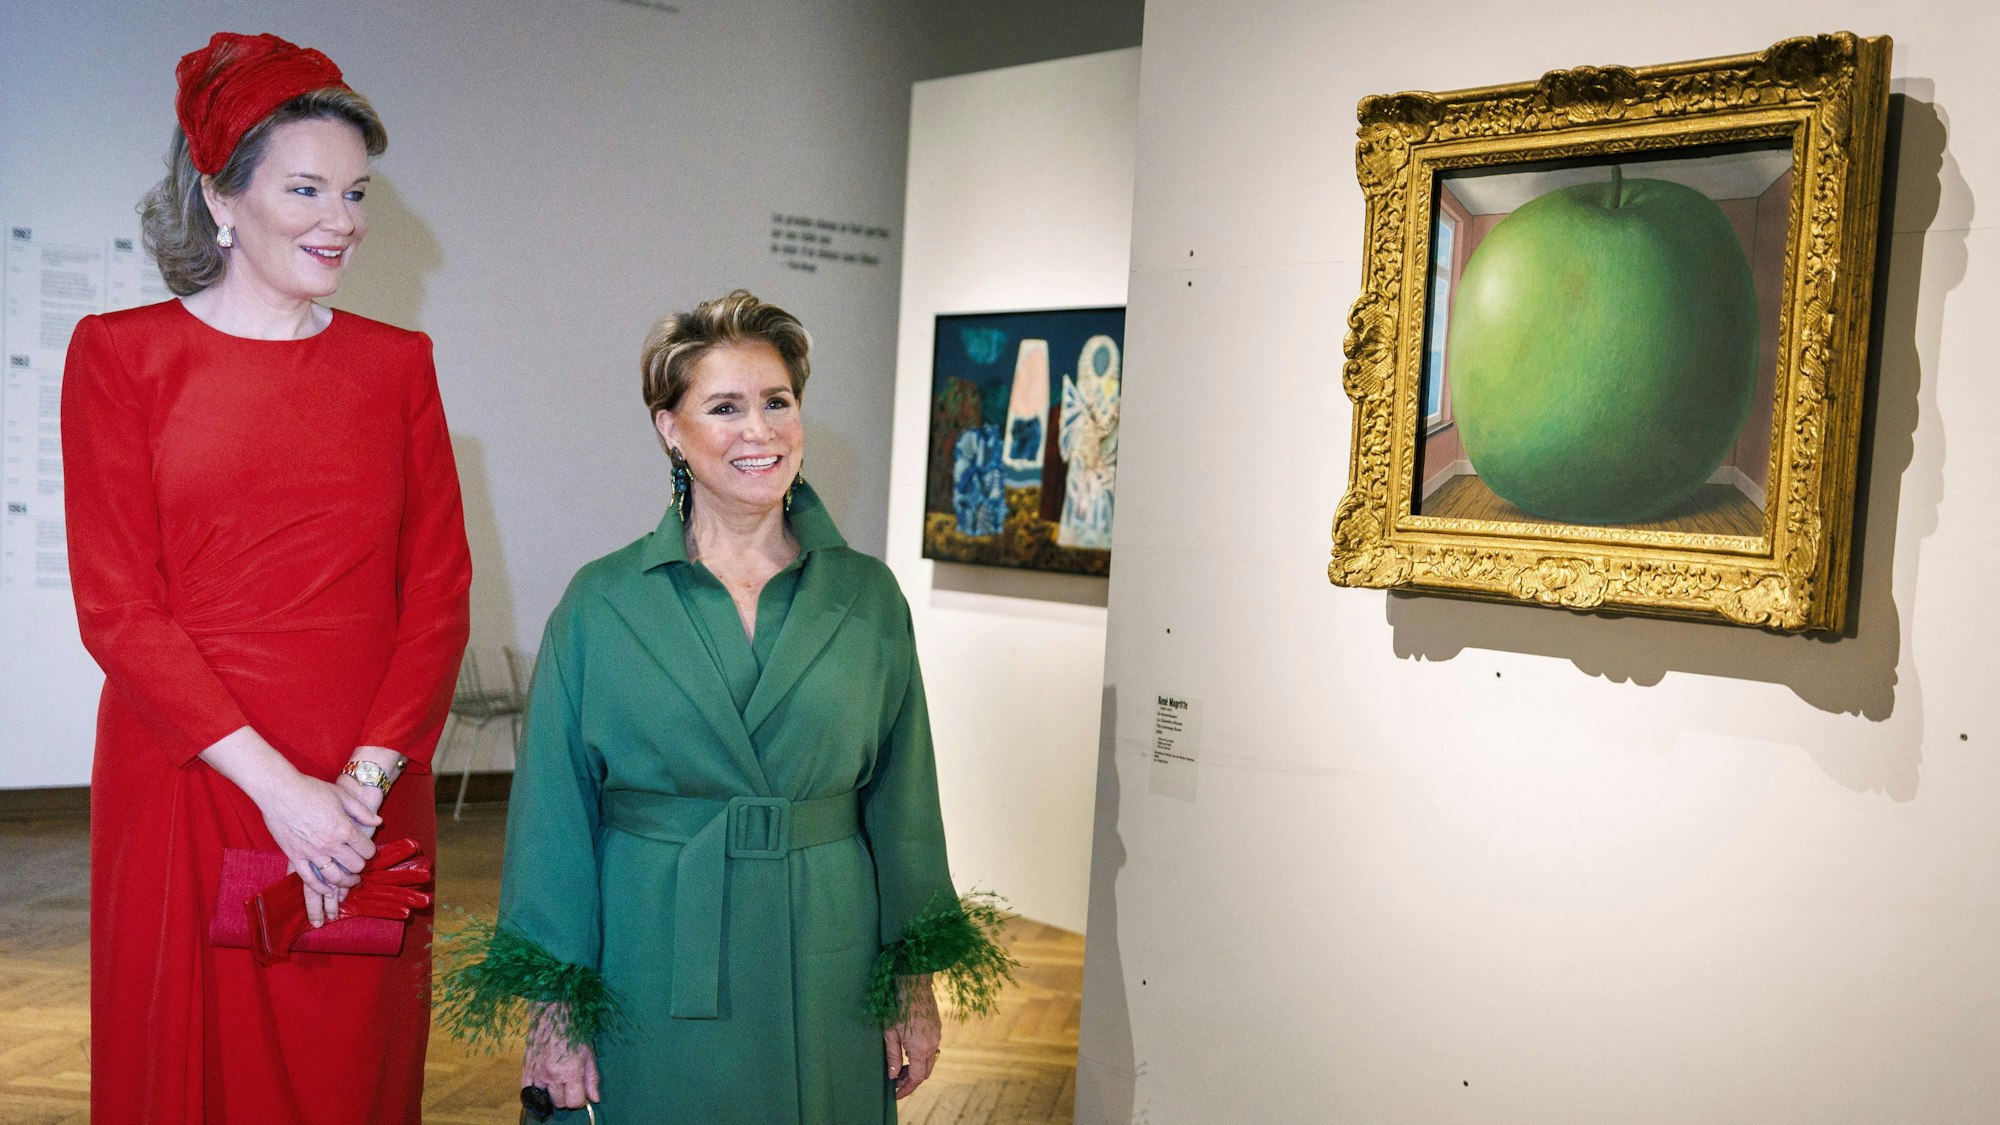 Königin Mathilde und Großherzogin Maria-Teresa beim Besuch des Bozar Centre for Fine Arts. Rechts ein Gemälde von Rene Magritte.